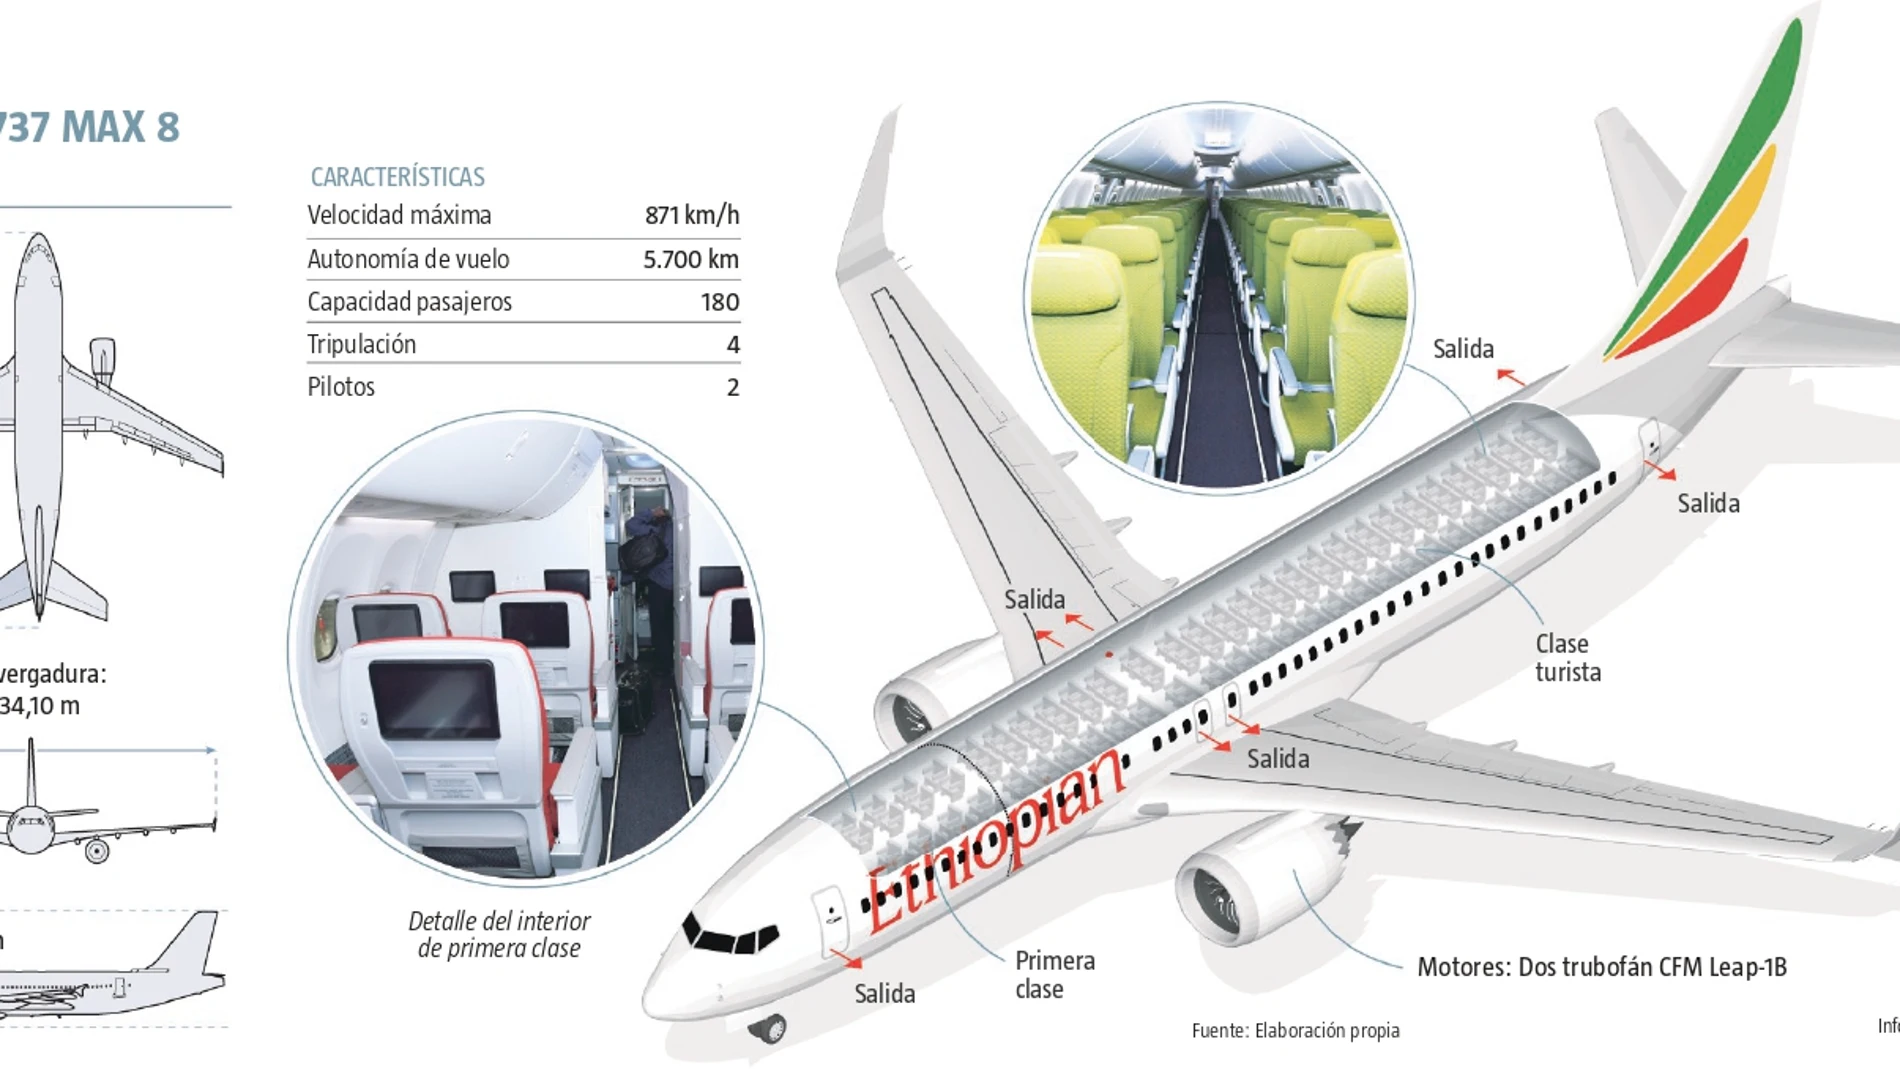 Análisis del modelo de avión Boeing 737 Max 8